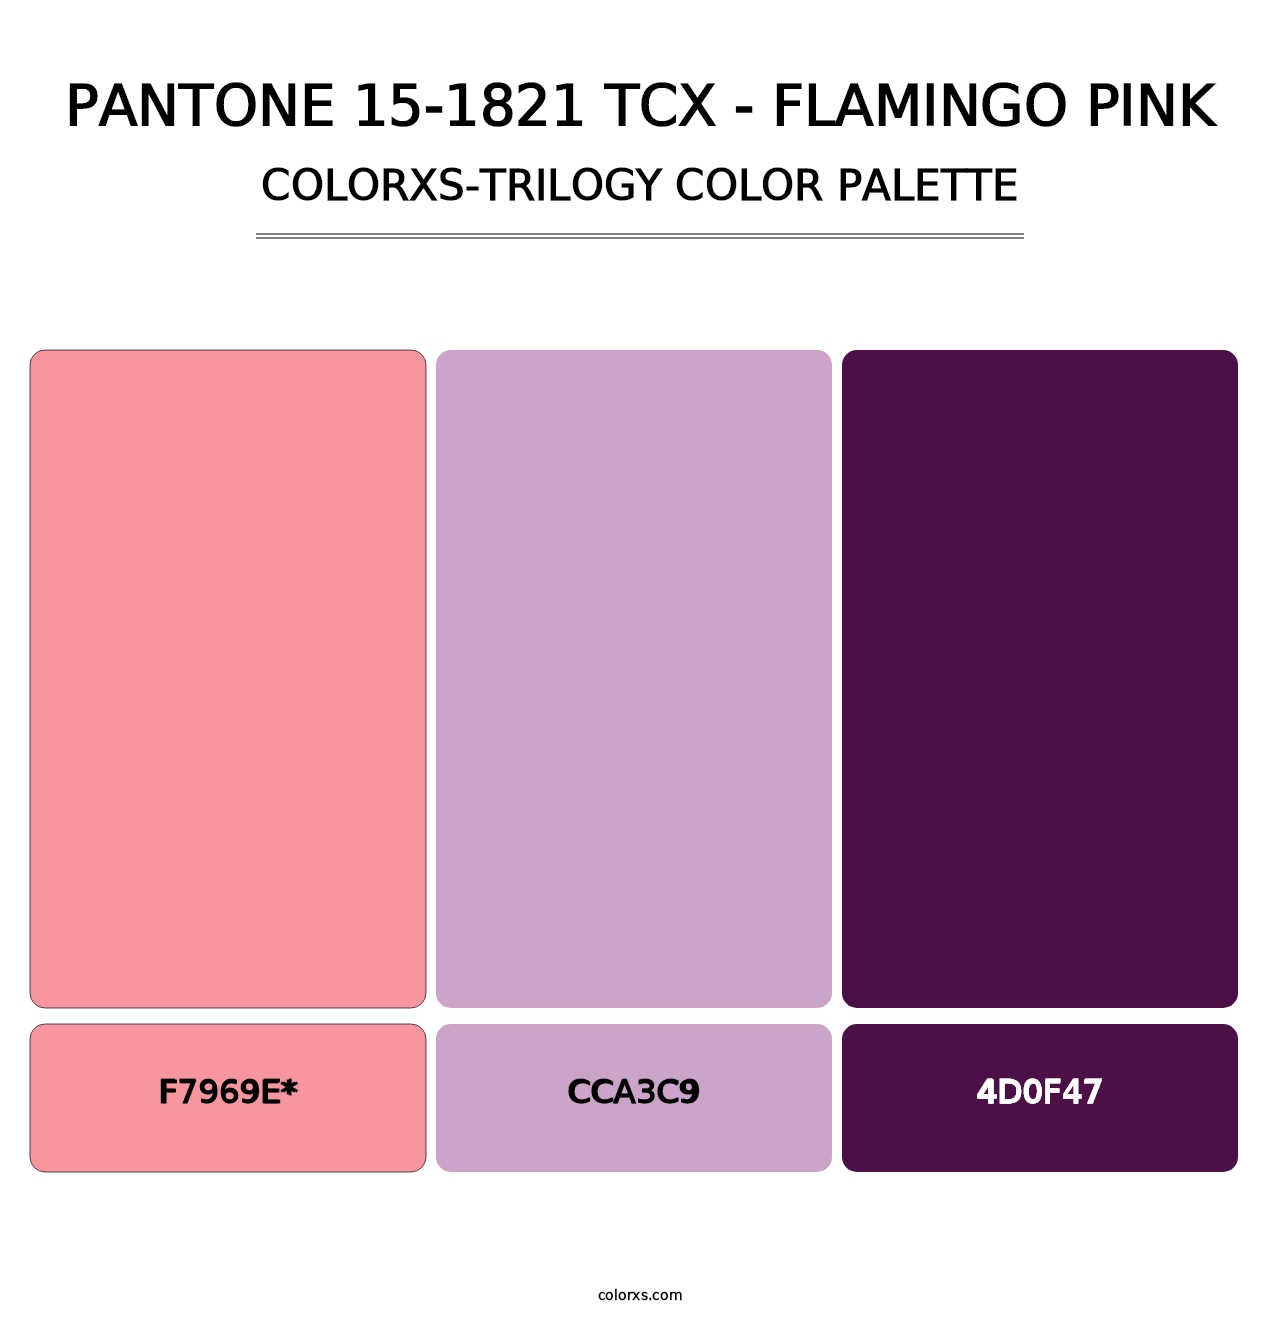 PANTONE 15-1821 TCX - Flamingo Pink - Colorxs Trilogy Palette